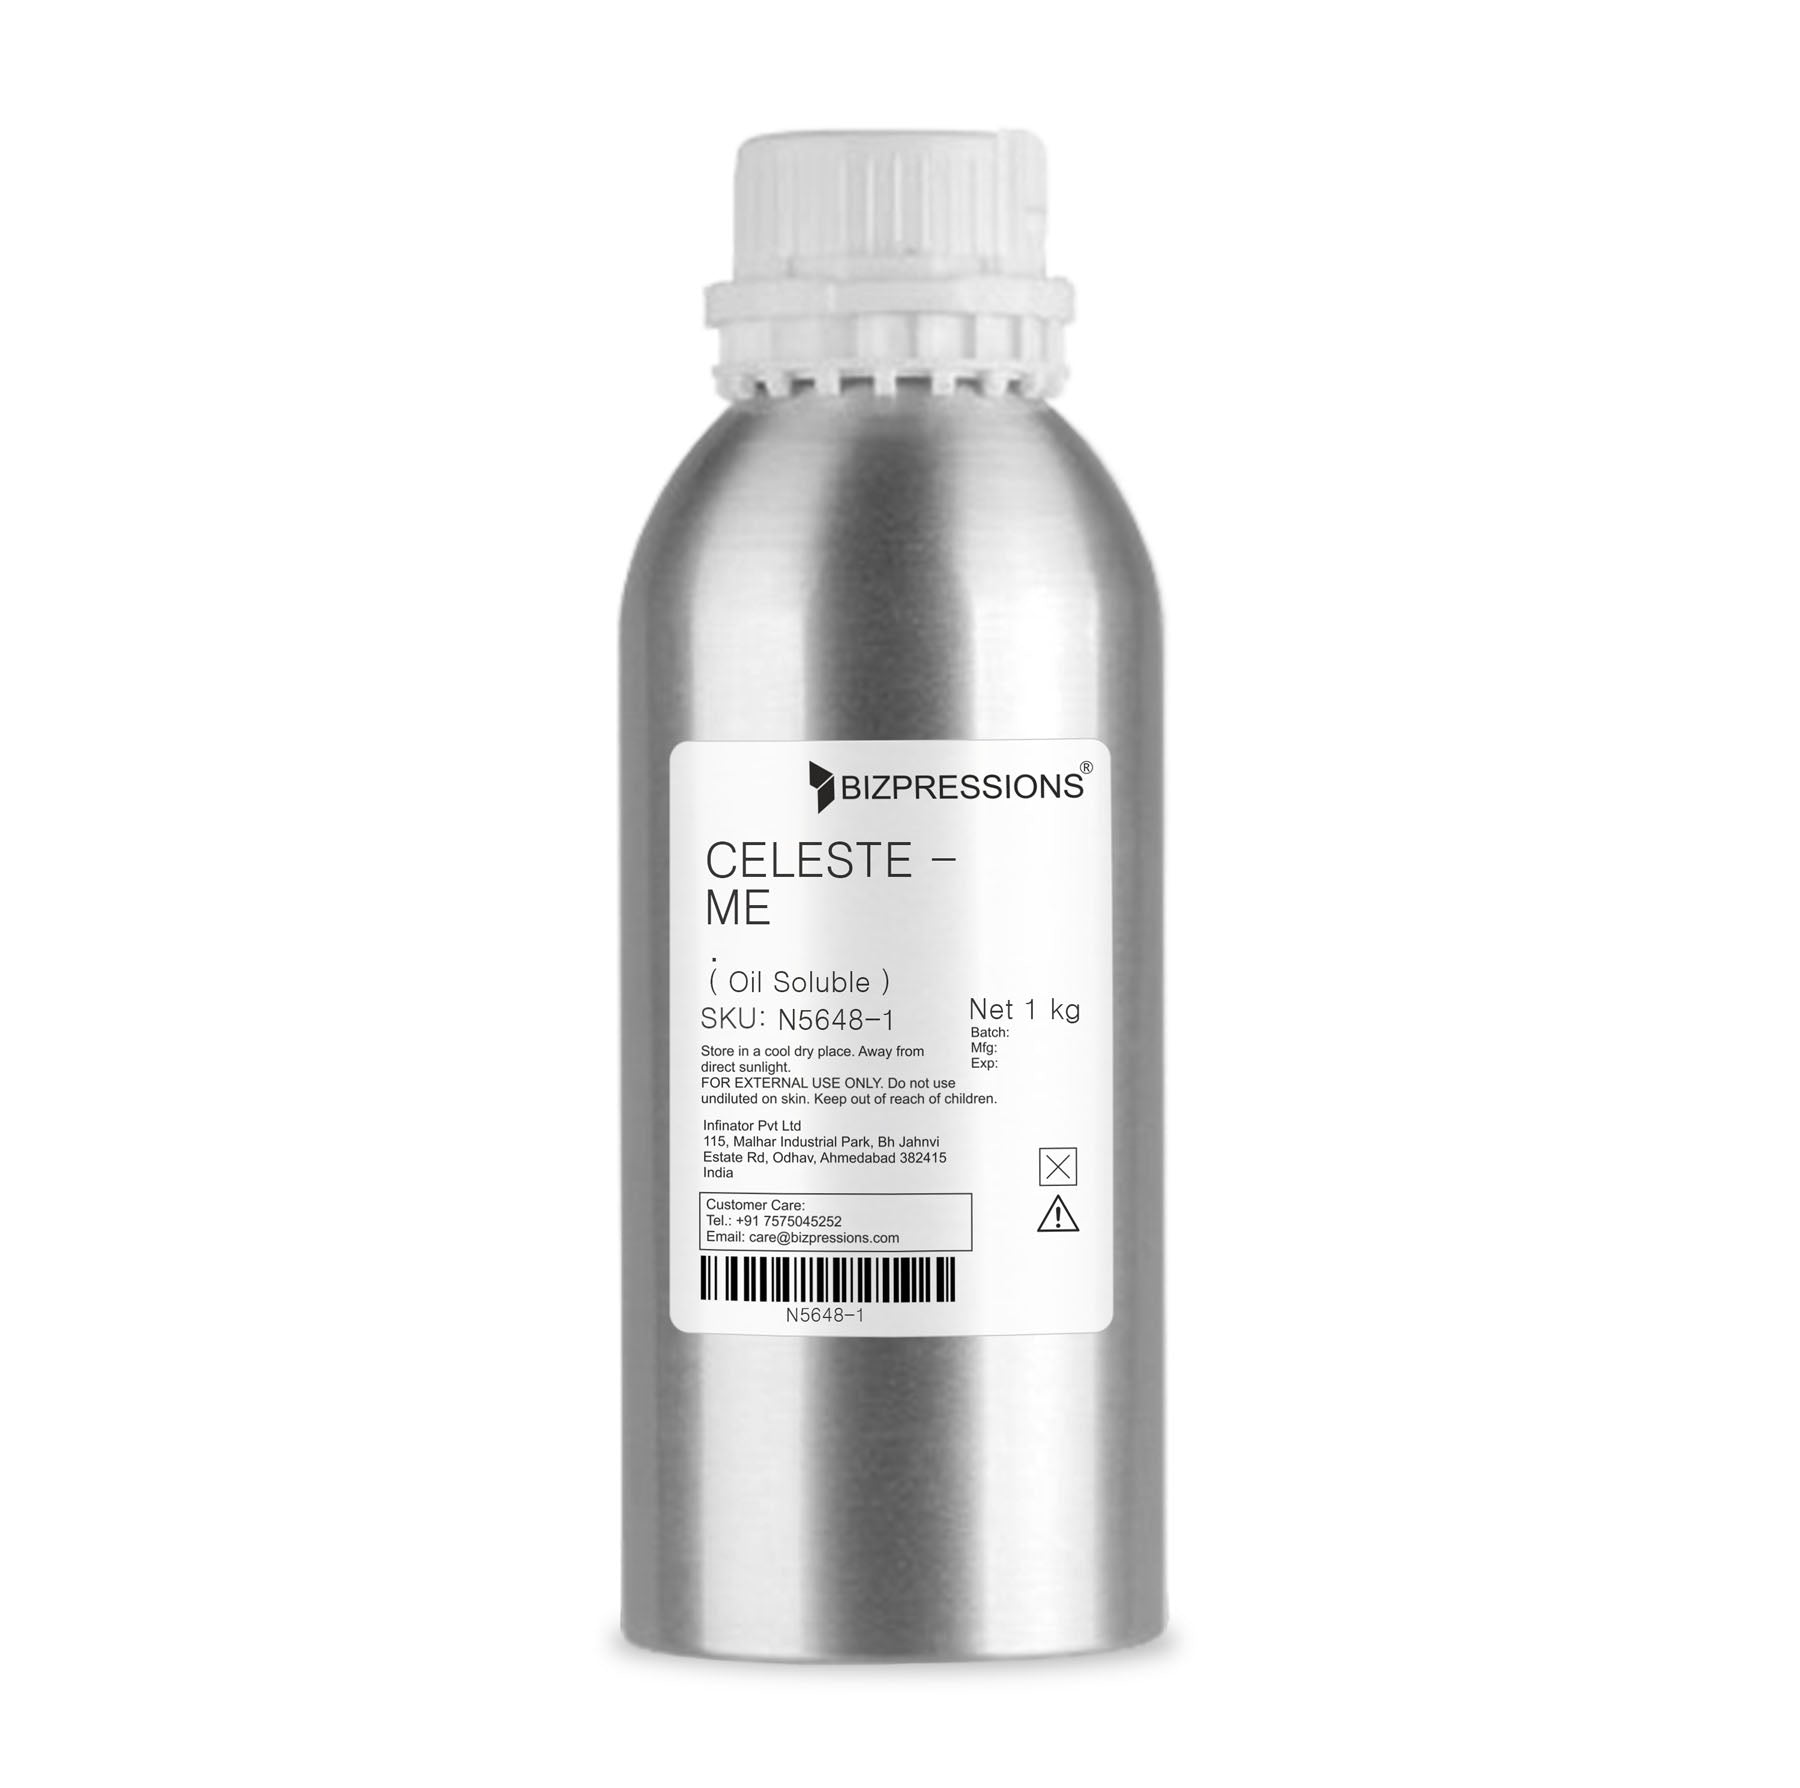 CELESTE - ME - Fragrance ( Oil Soluble ) - 1 kg